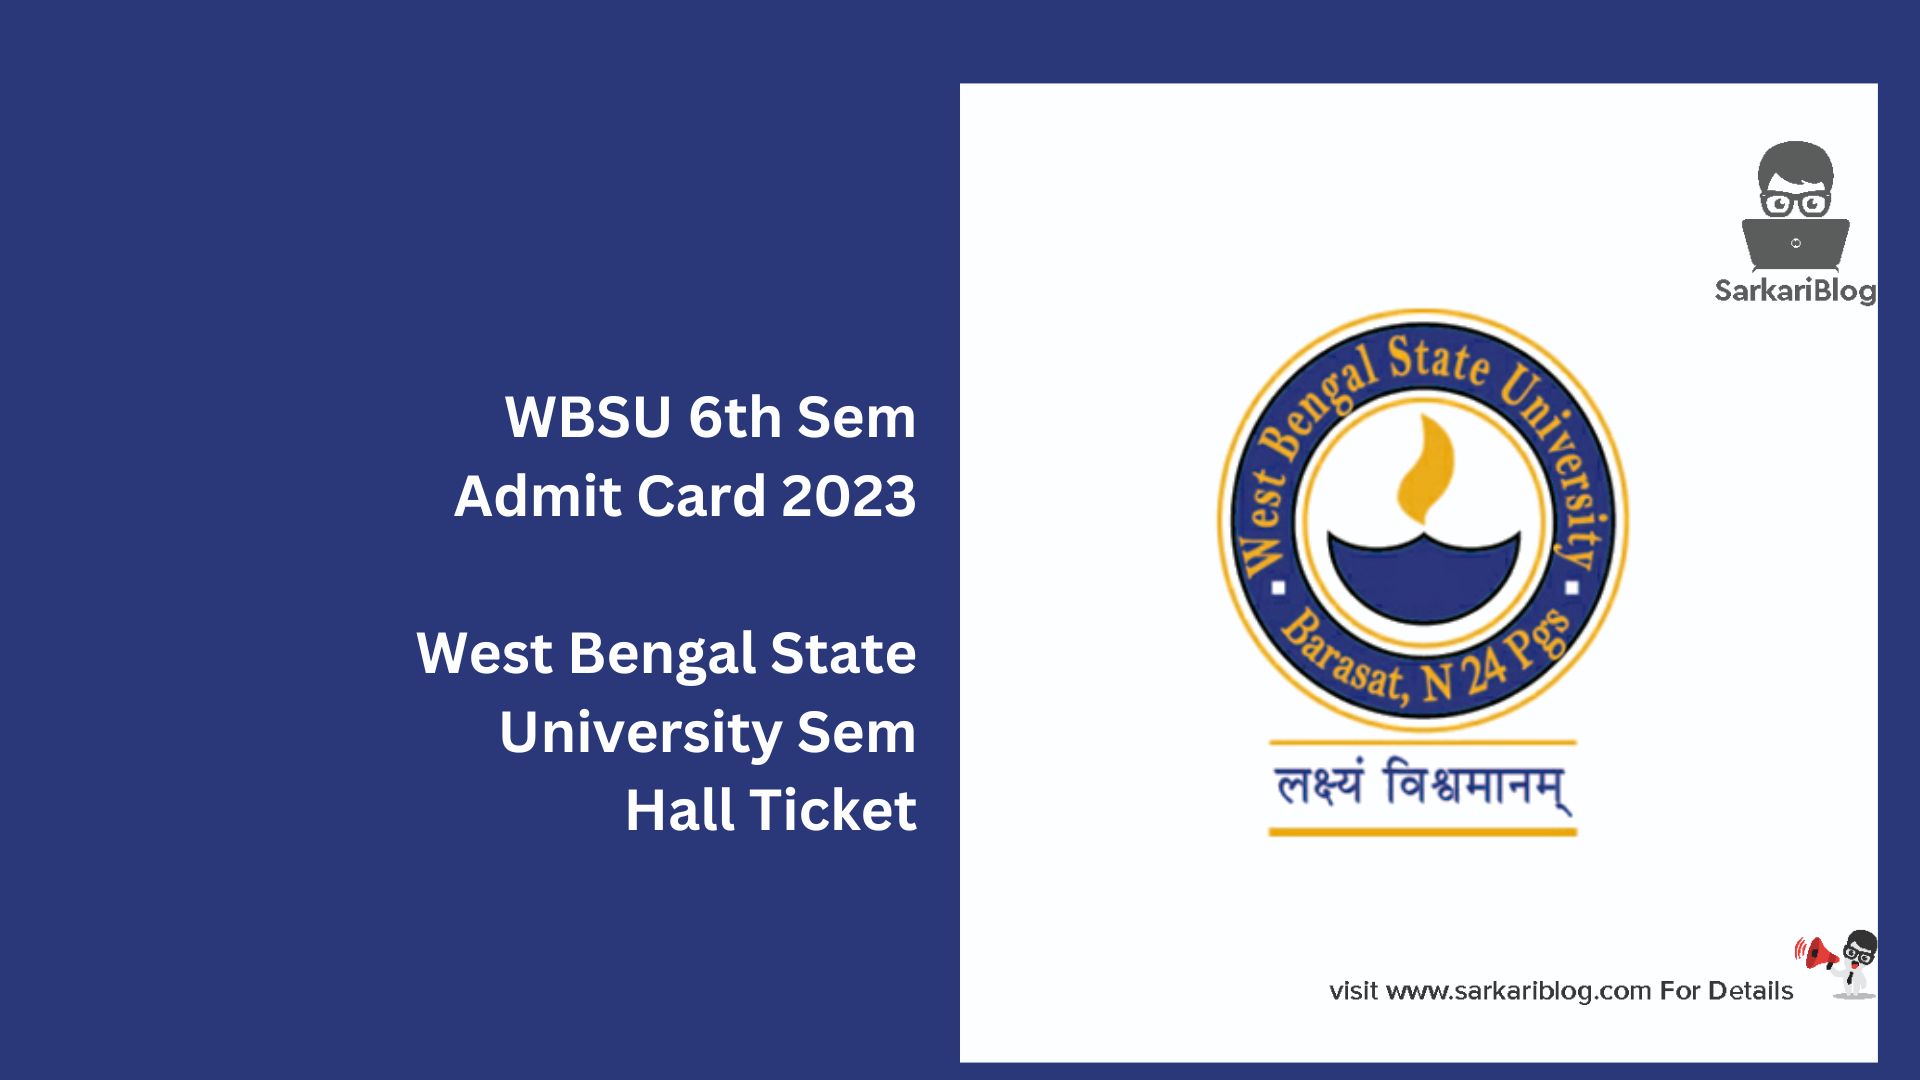 WBSU 6th Sem Admit Card 2023